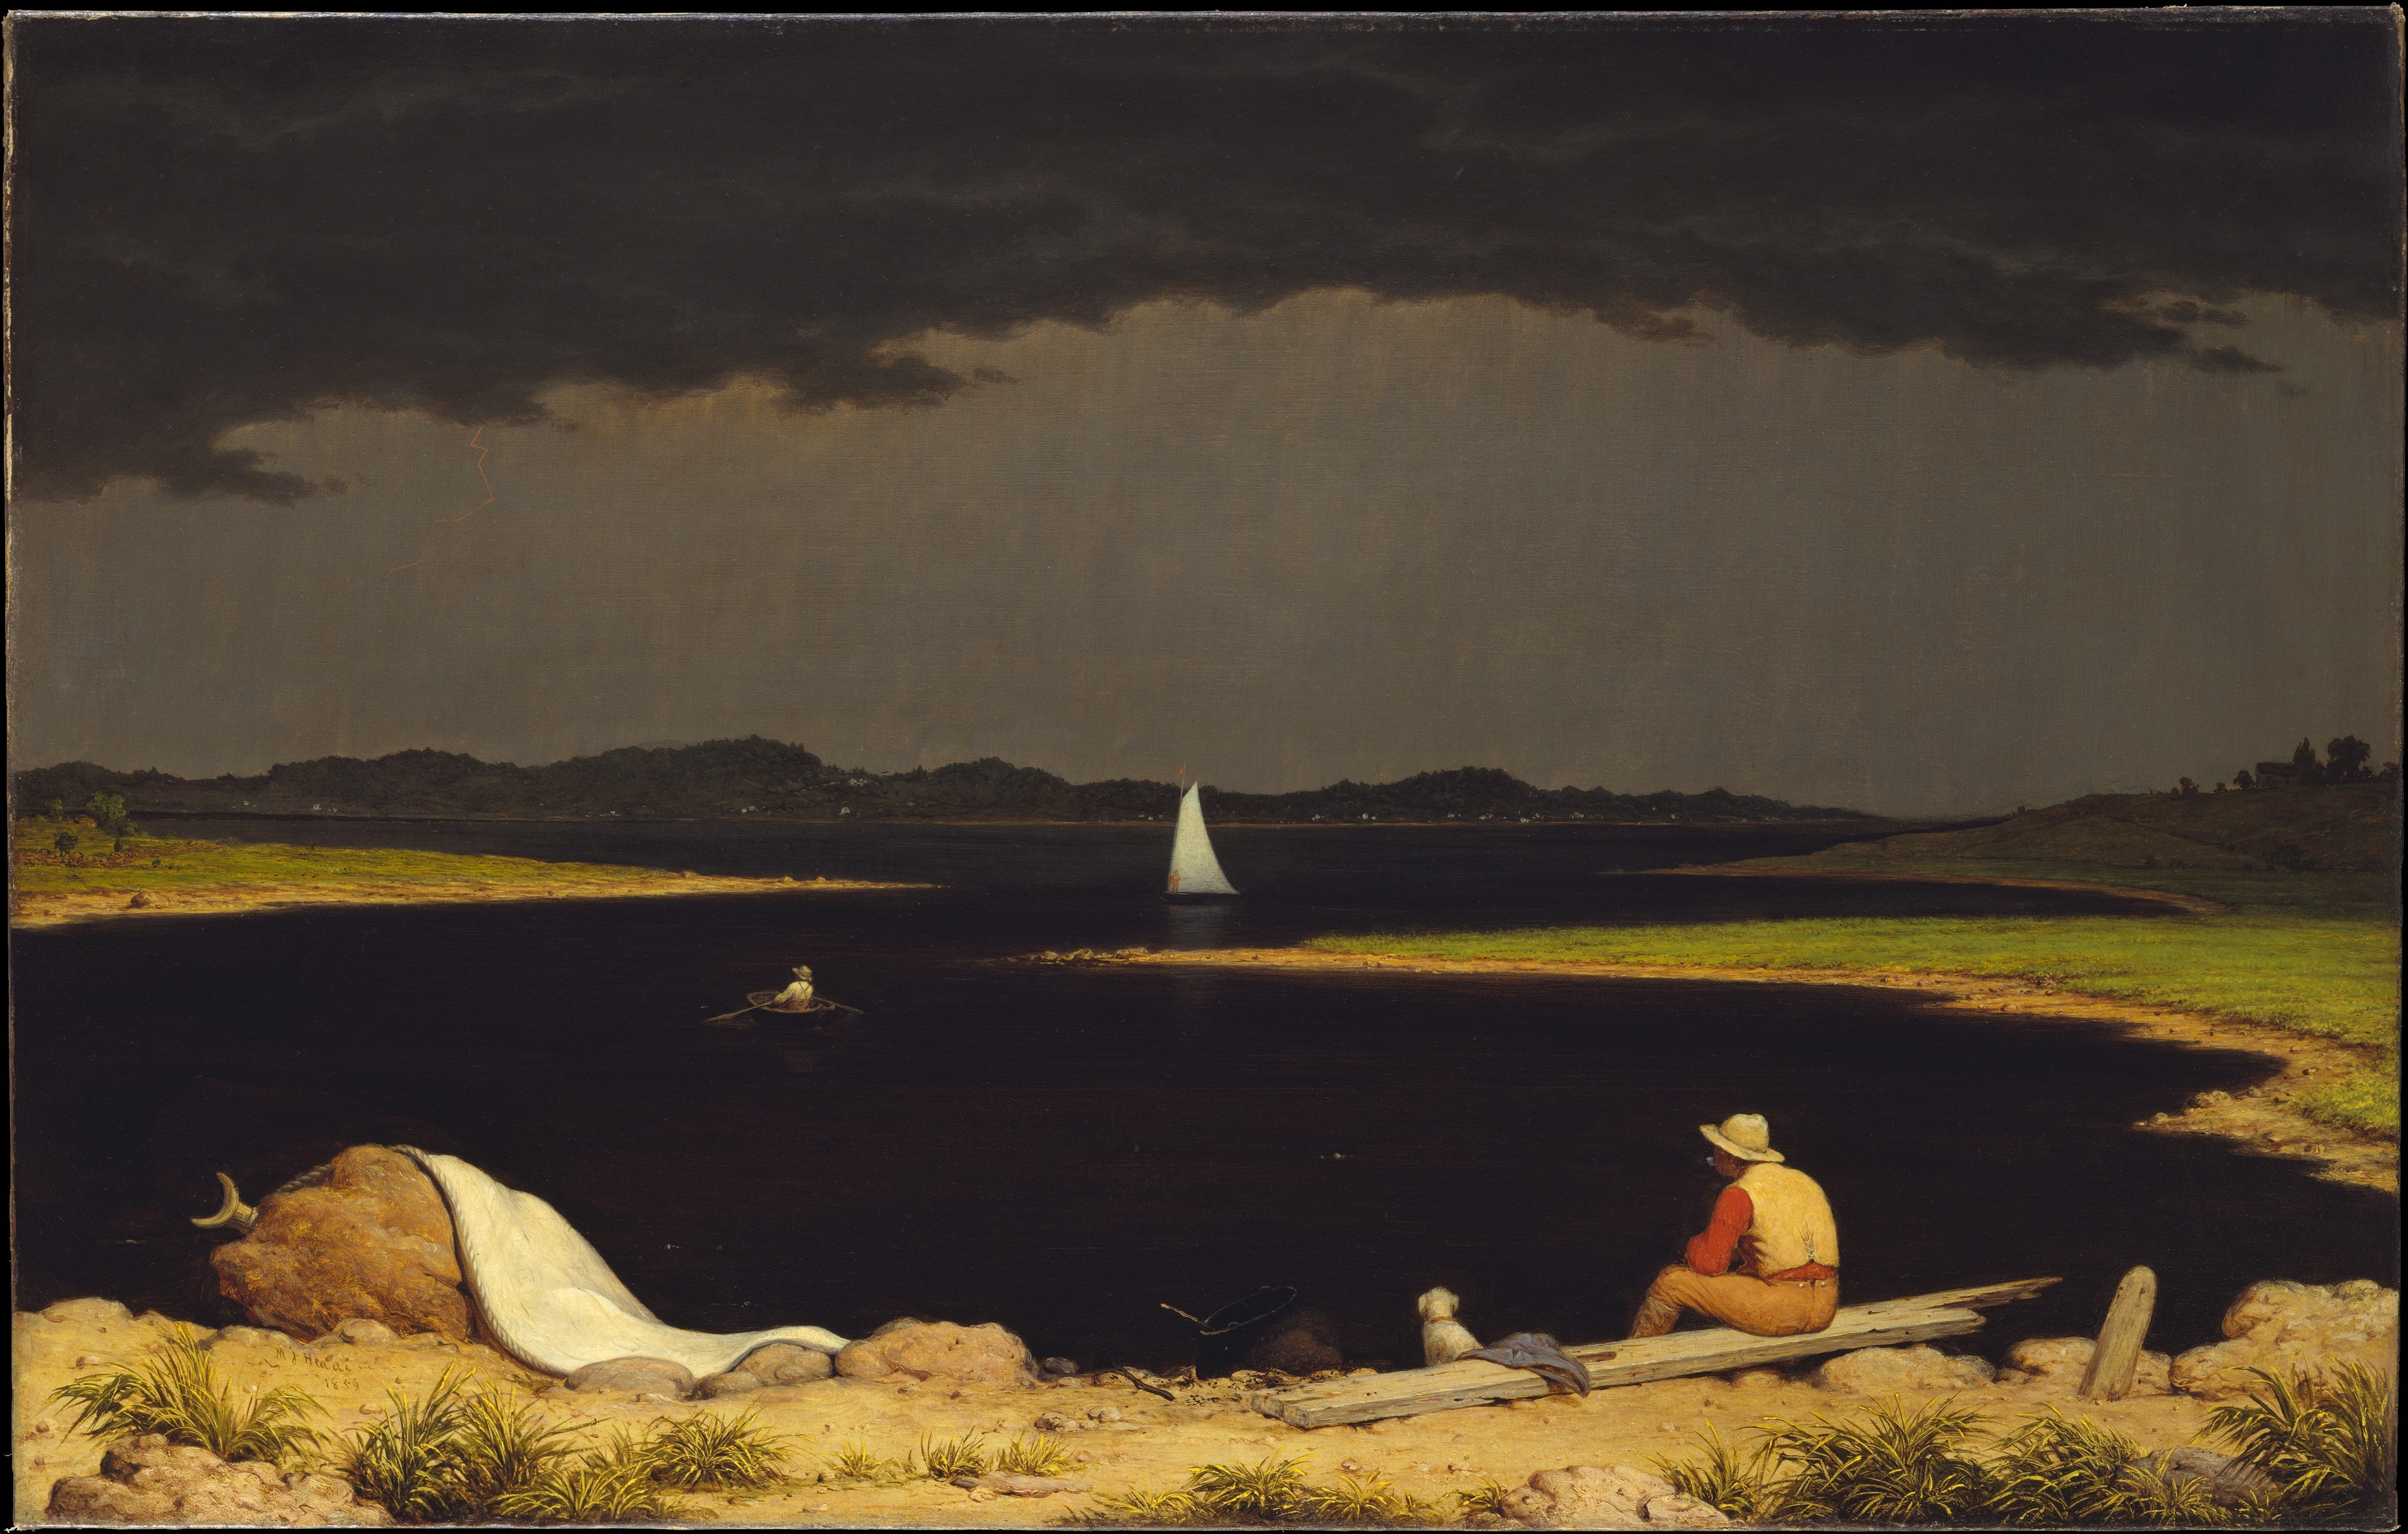 Furtună Care se Apropie by Martin Johnson Heade - 1859 - 71.1 x 111.8 cm 